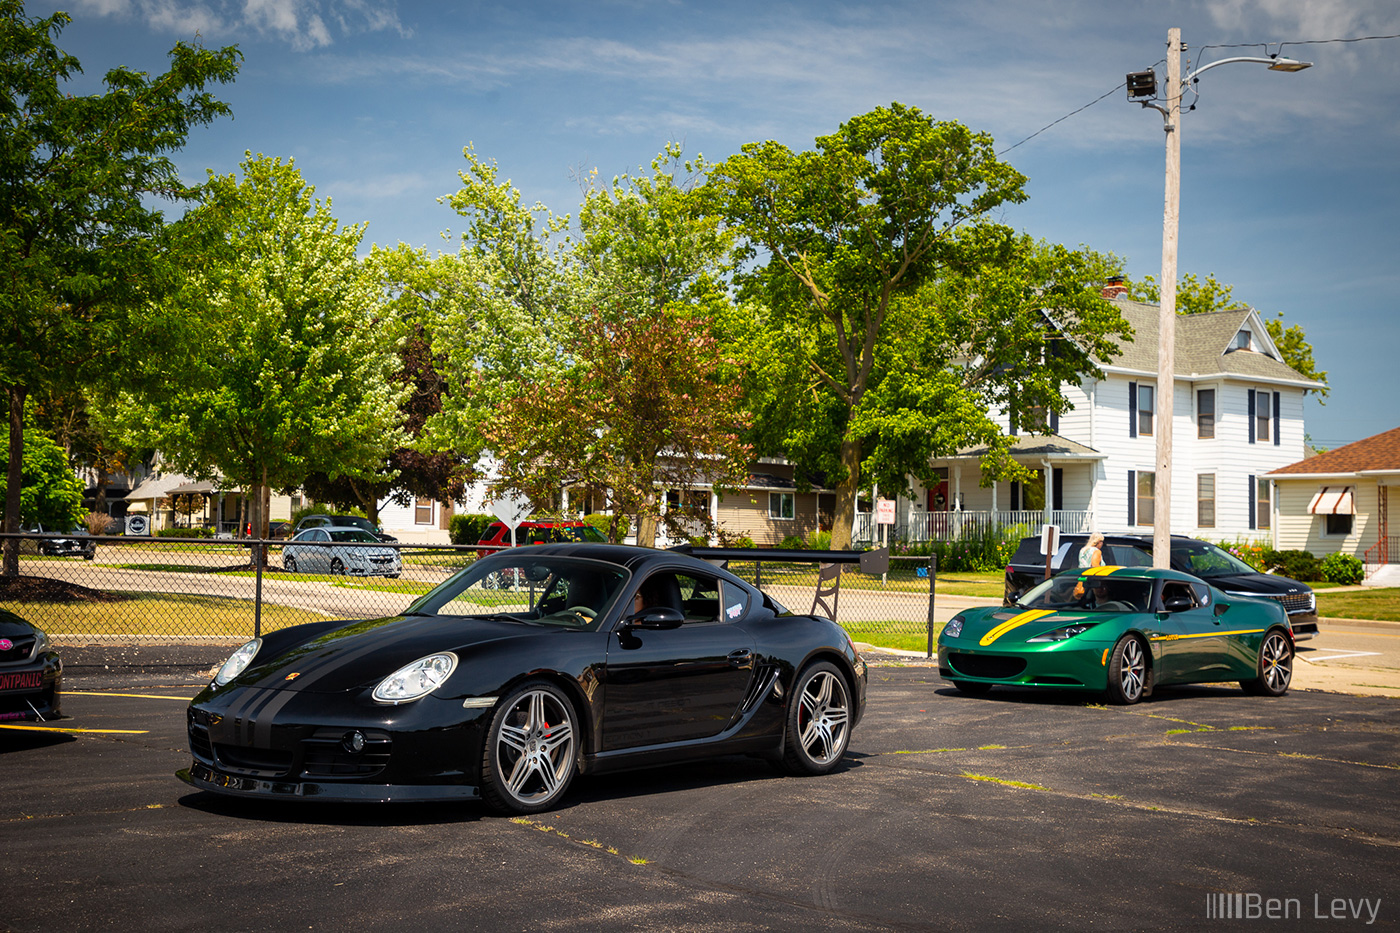 Black Lotus Cayman S and Green Lotus Elise